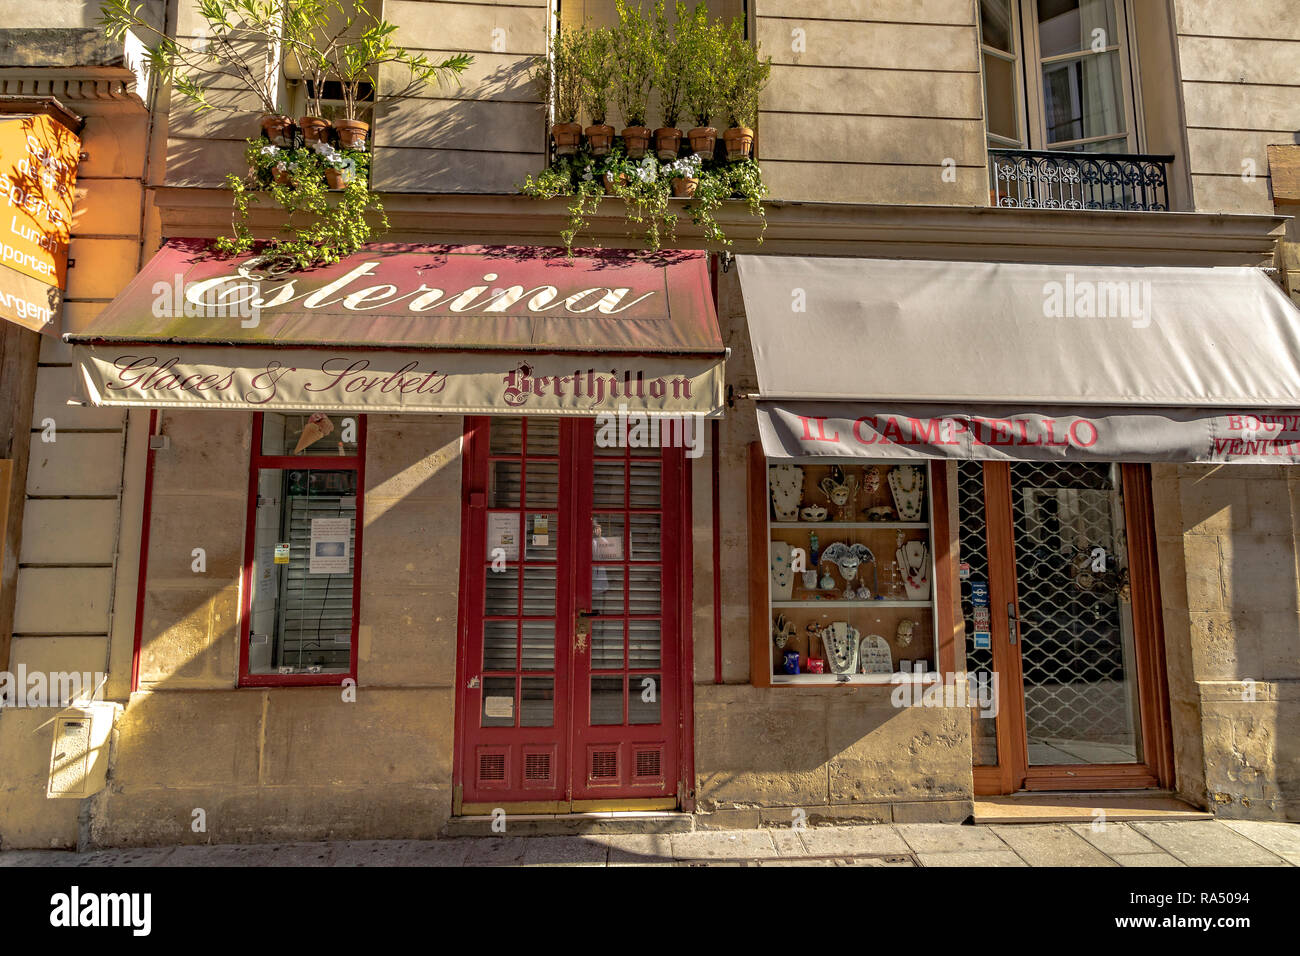 Esterina glaces and sorbet shop and Il Campiello a decorative mask shop on  Rue Saint-Louis en l'Île ,Île Saint-Louis,Paris Stock Photo